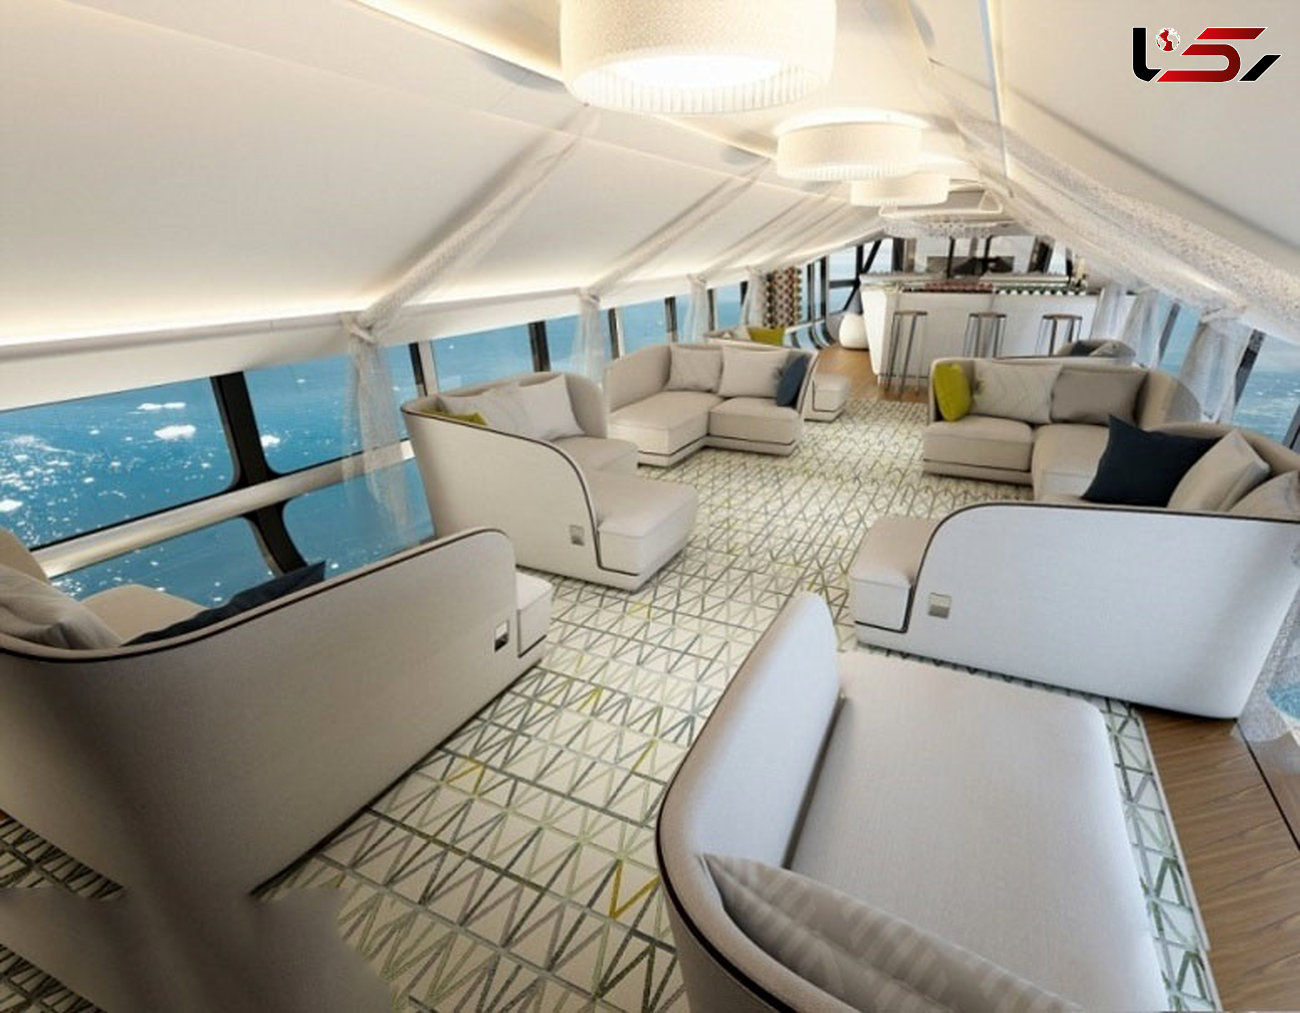 ثروتمندان جهان با هواپیمای کف شیشه ای به سفرهای لاکچری می روند!